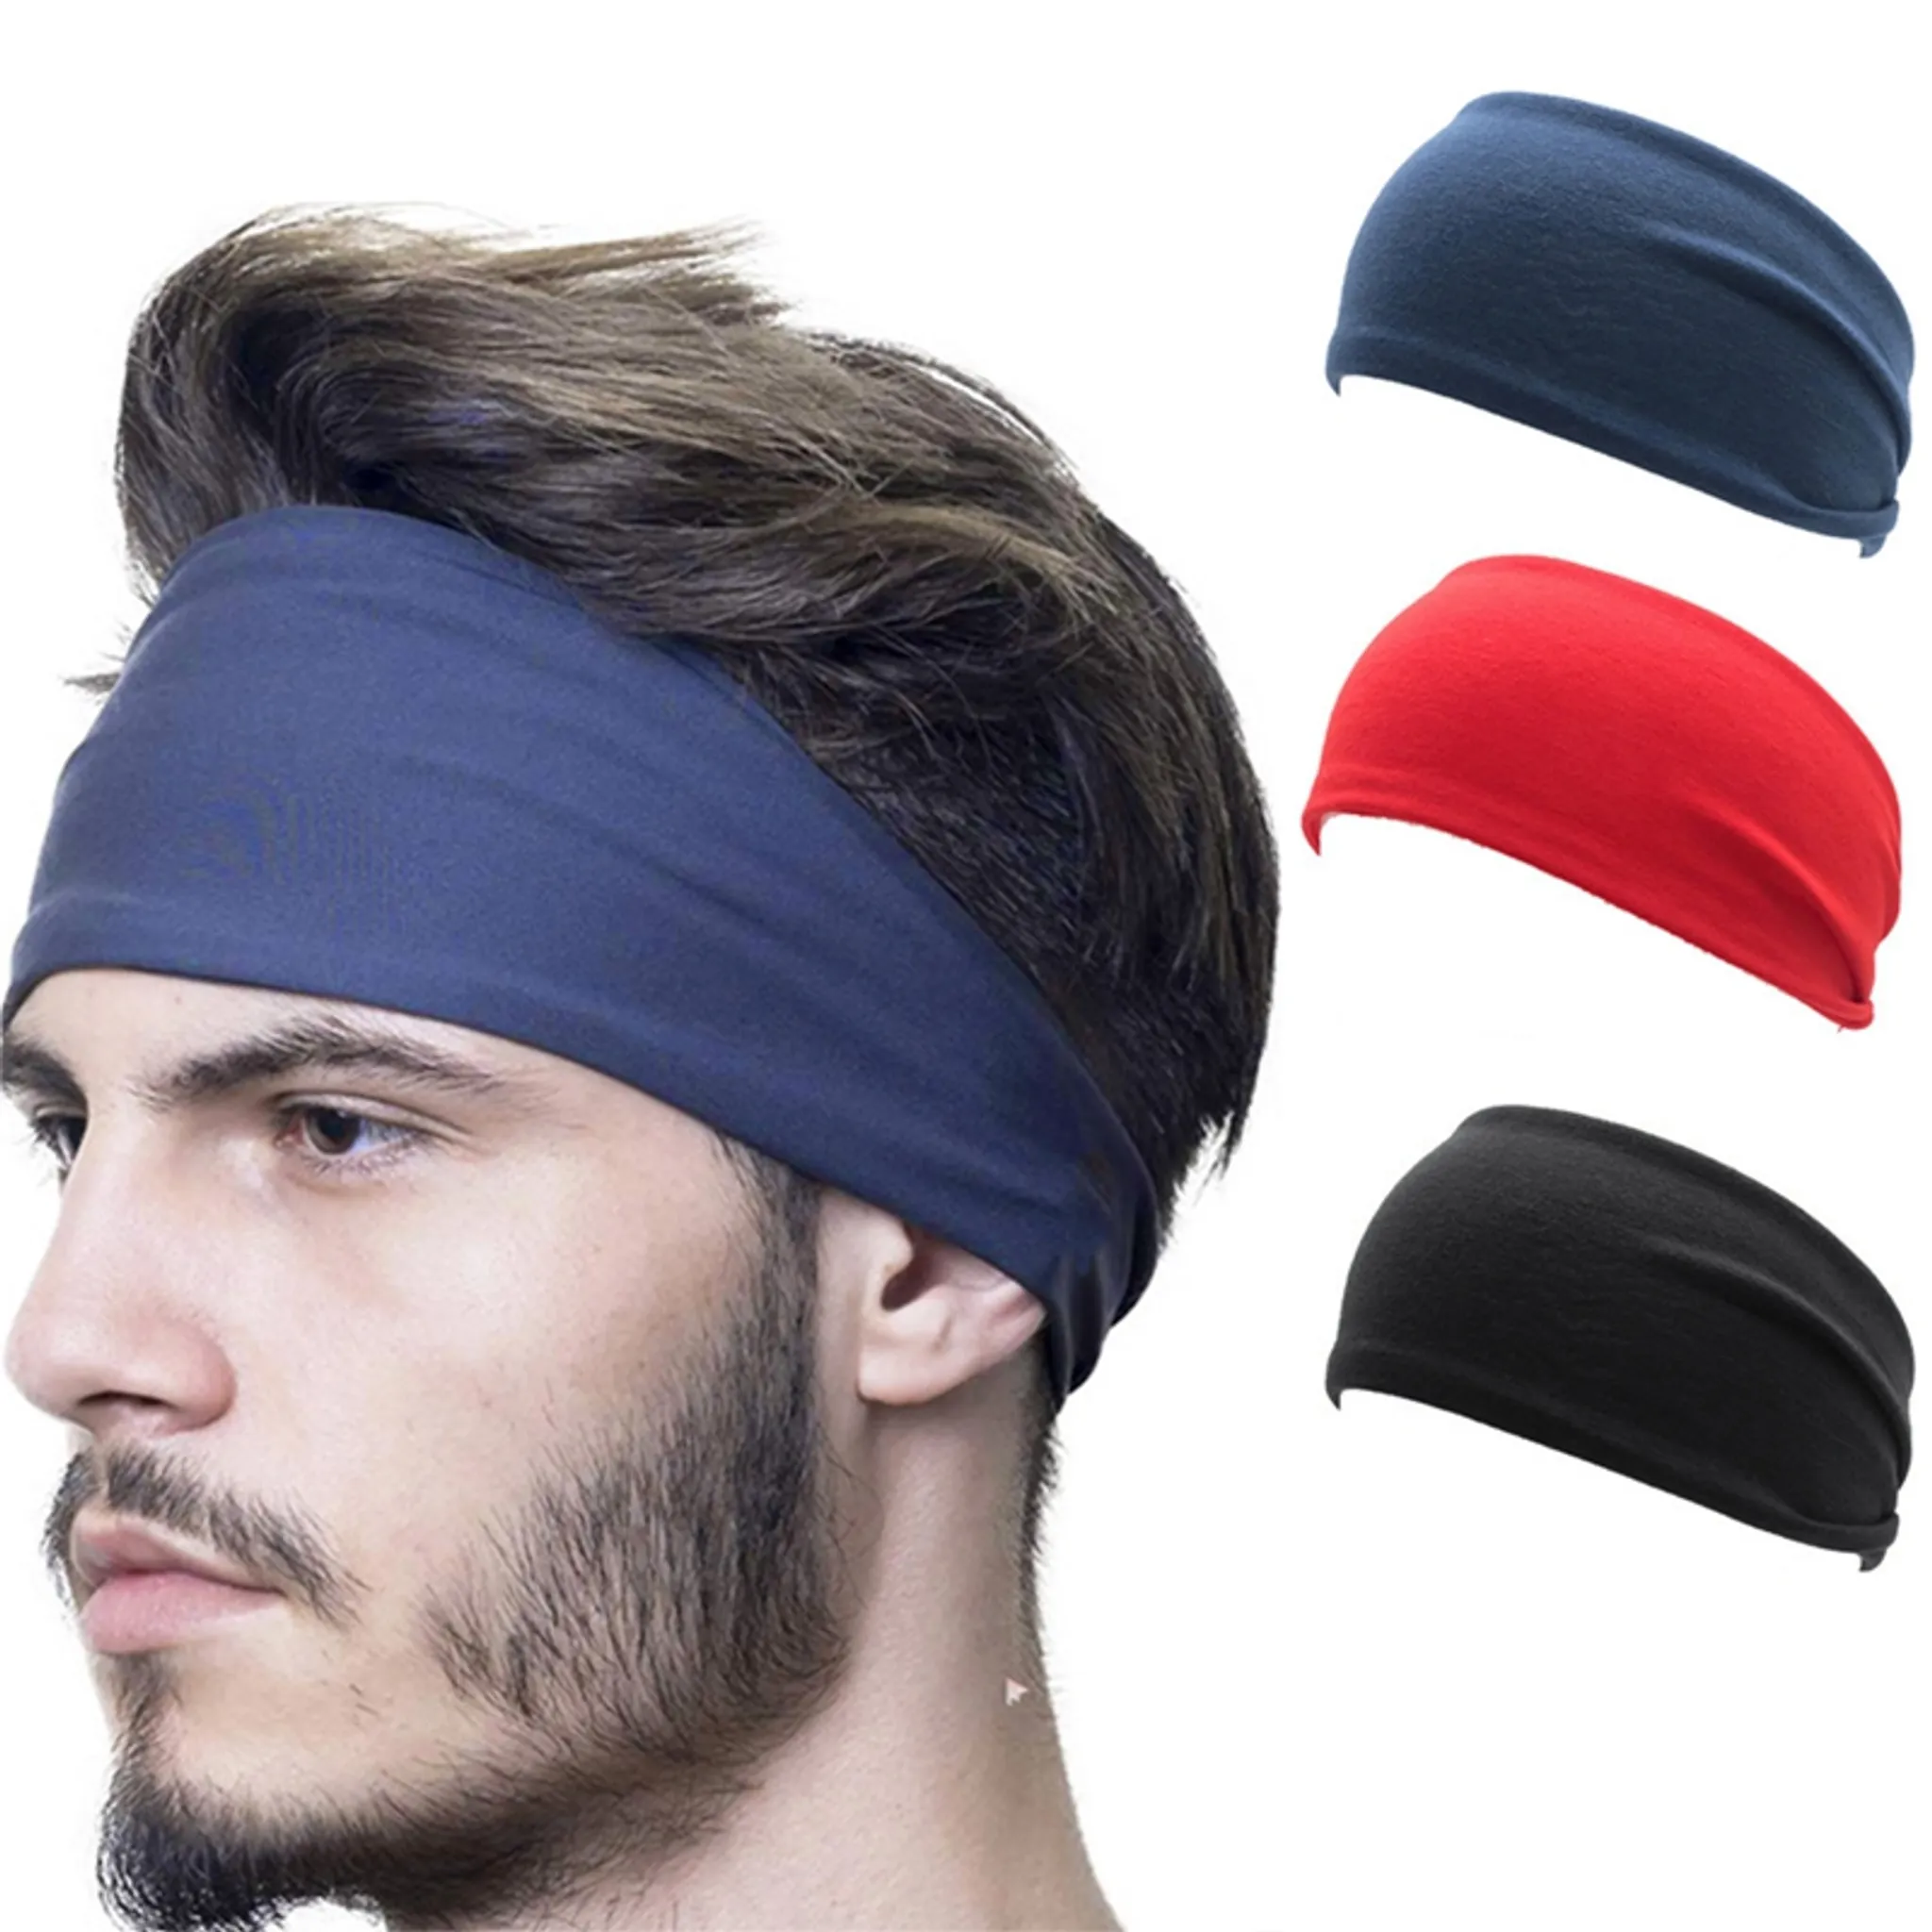 Sport Stirnband, Frottee Stirnbänder, Schweißband, Kopfband